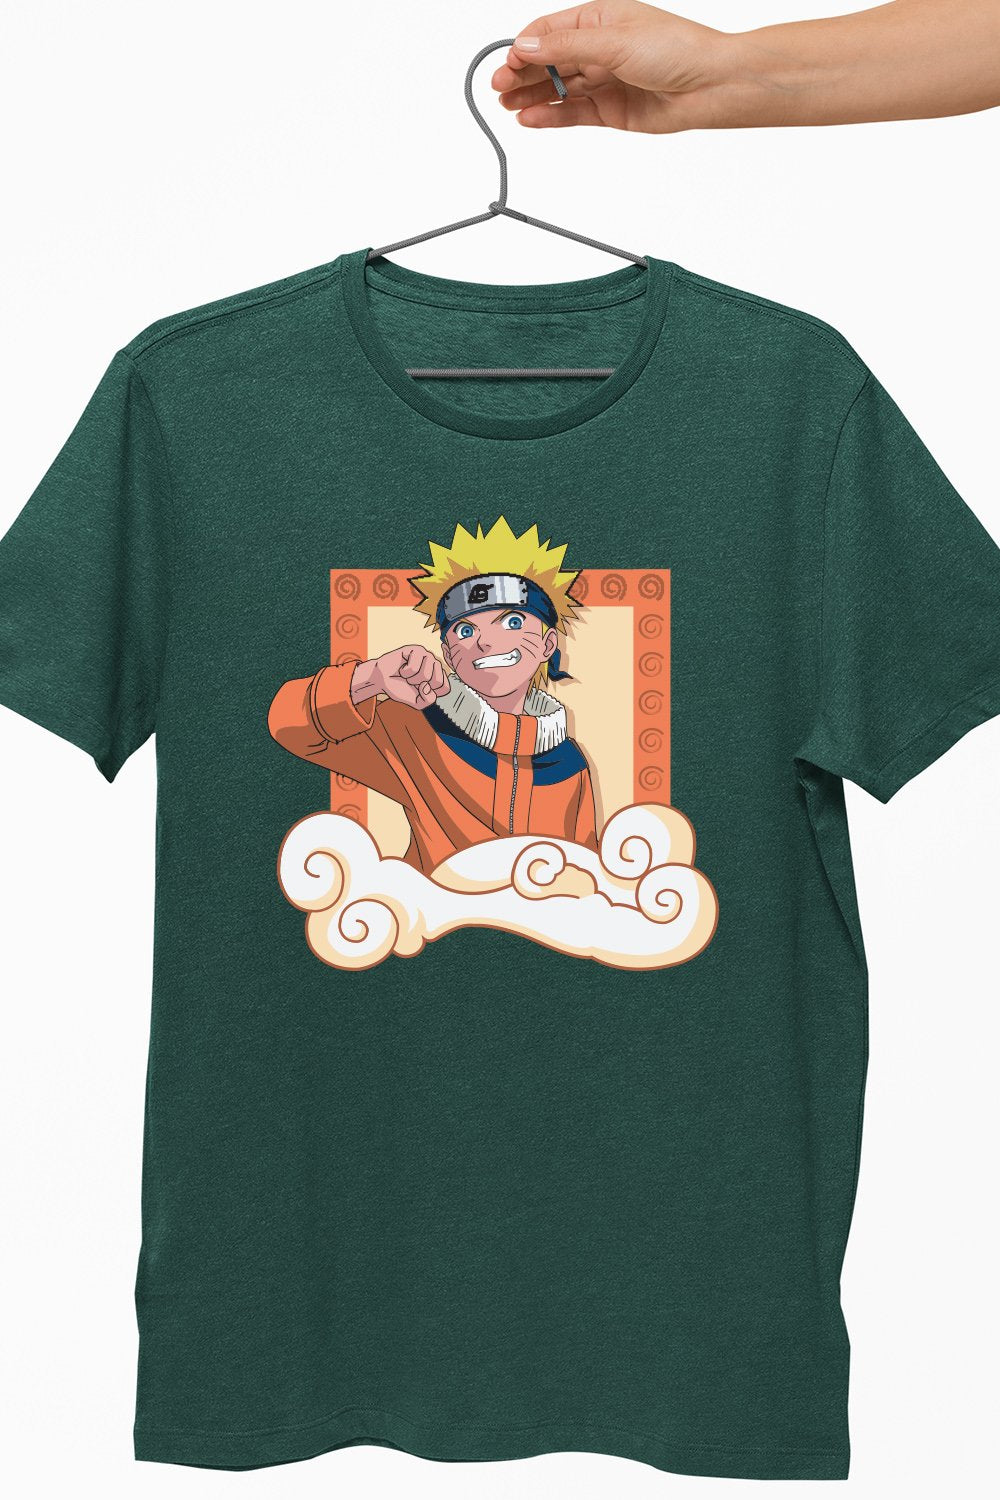 Naruto Green Tshirt